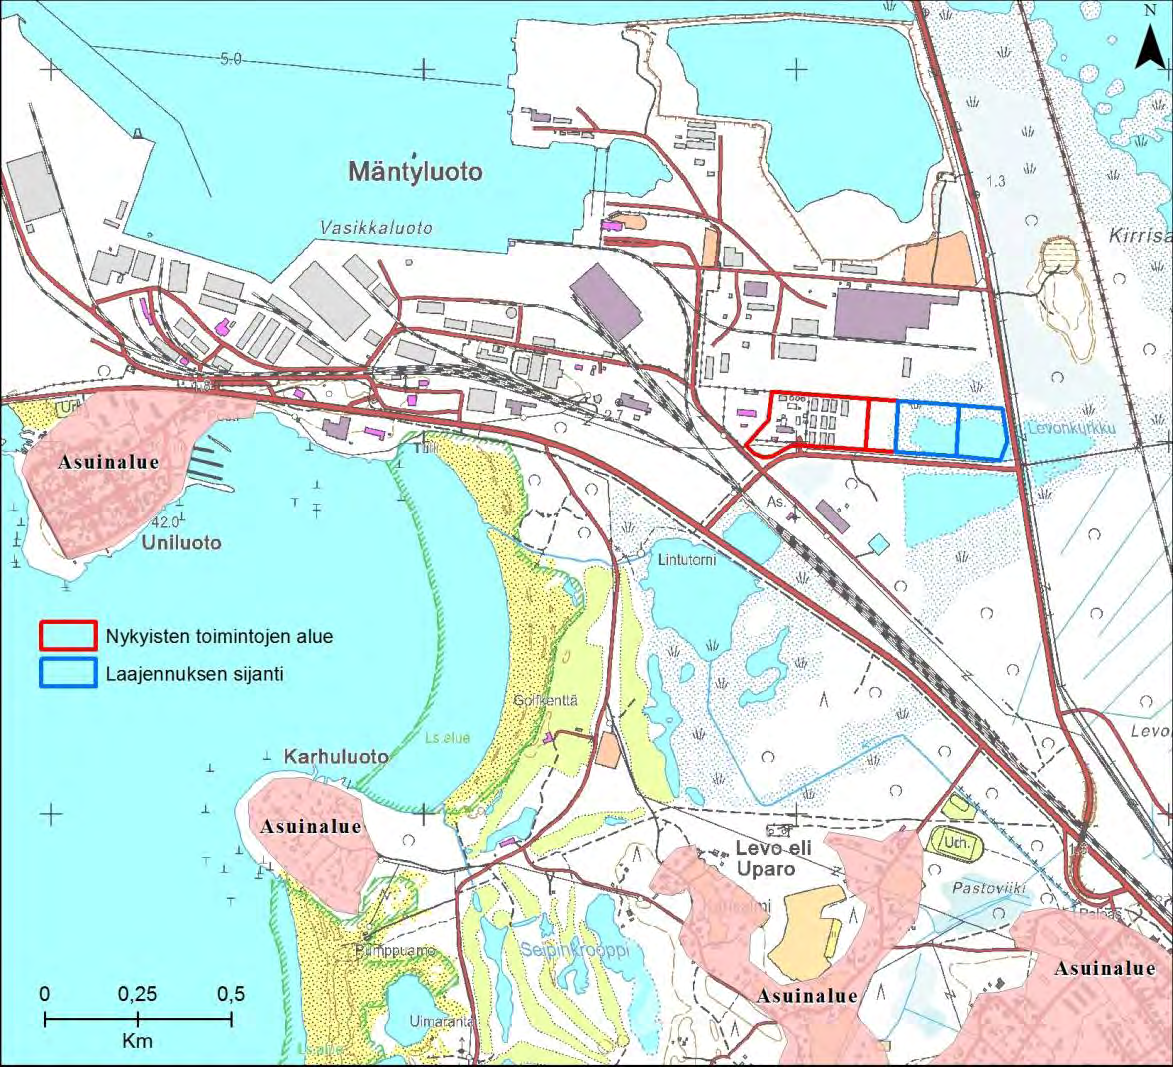 Kuva 13. Suunniteltua laitosta lähinnä sijaitsevat asutusalueet Mäntyluodossa. Peittoo Maa- ja kallioperä Porin teollisuusjätekeskus sijaitsee Peittoon alueella.